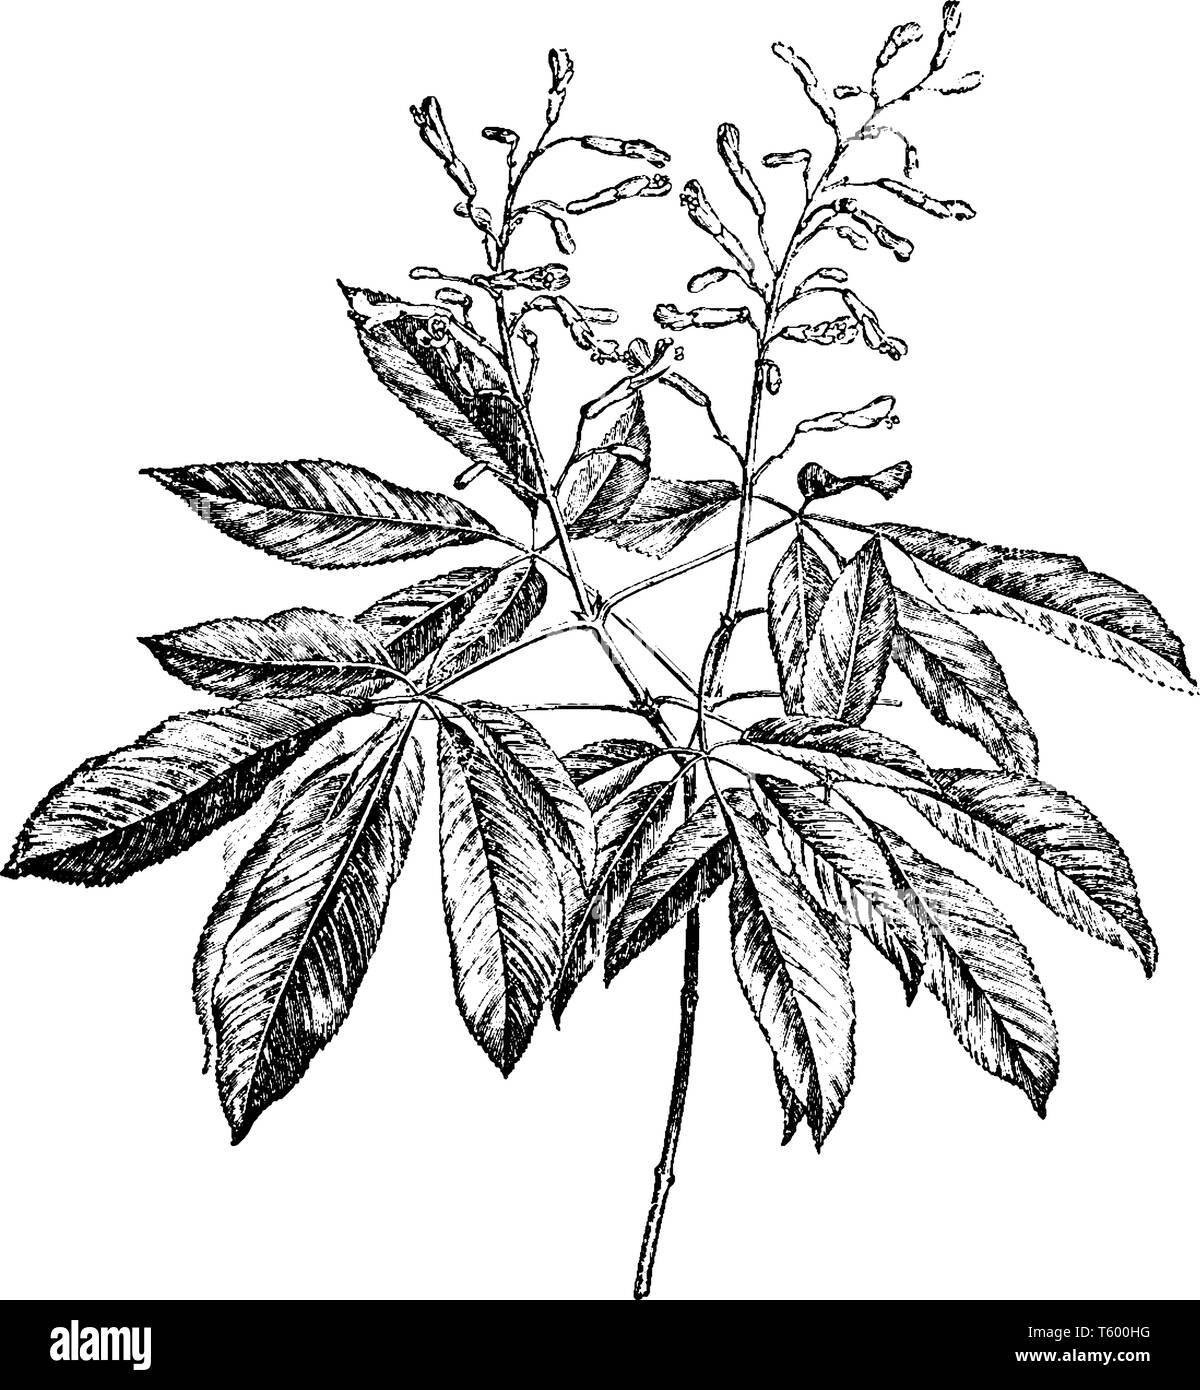 Pavia Rubra cresce come la diffusione di un arbusto o piccolo albero ad una altezza di 2-8 m e larghezza simile. Esso presenta una spessa linea succulenti e insaccato reggiseno smussato Illustrazione Vettoriale